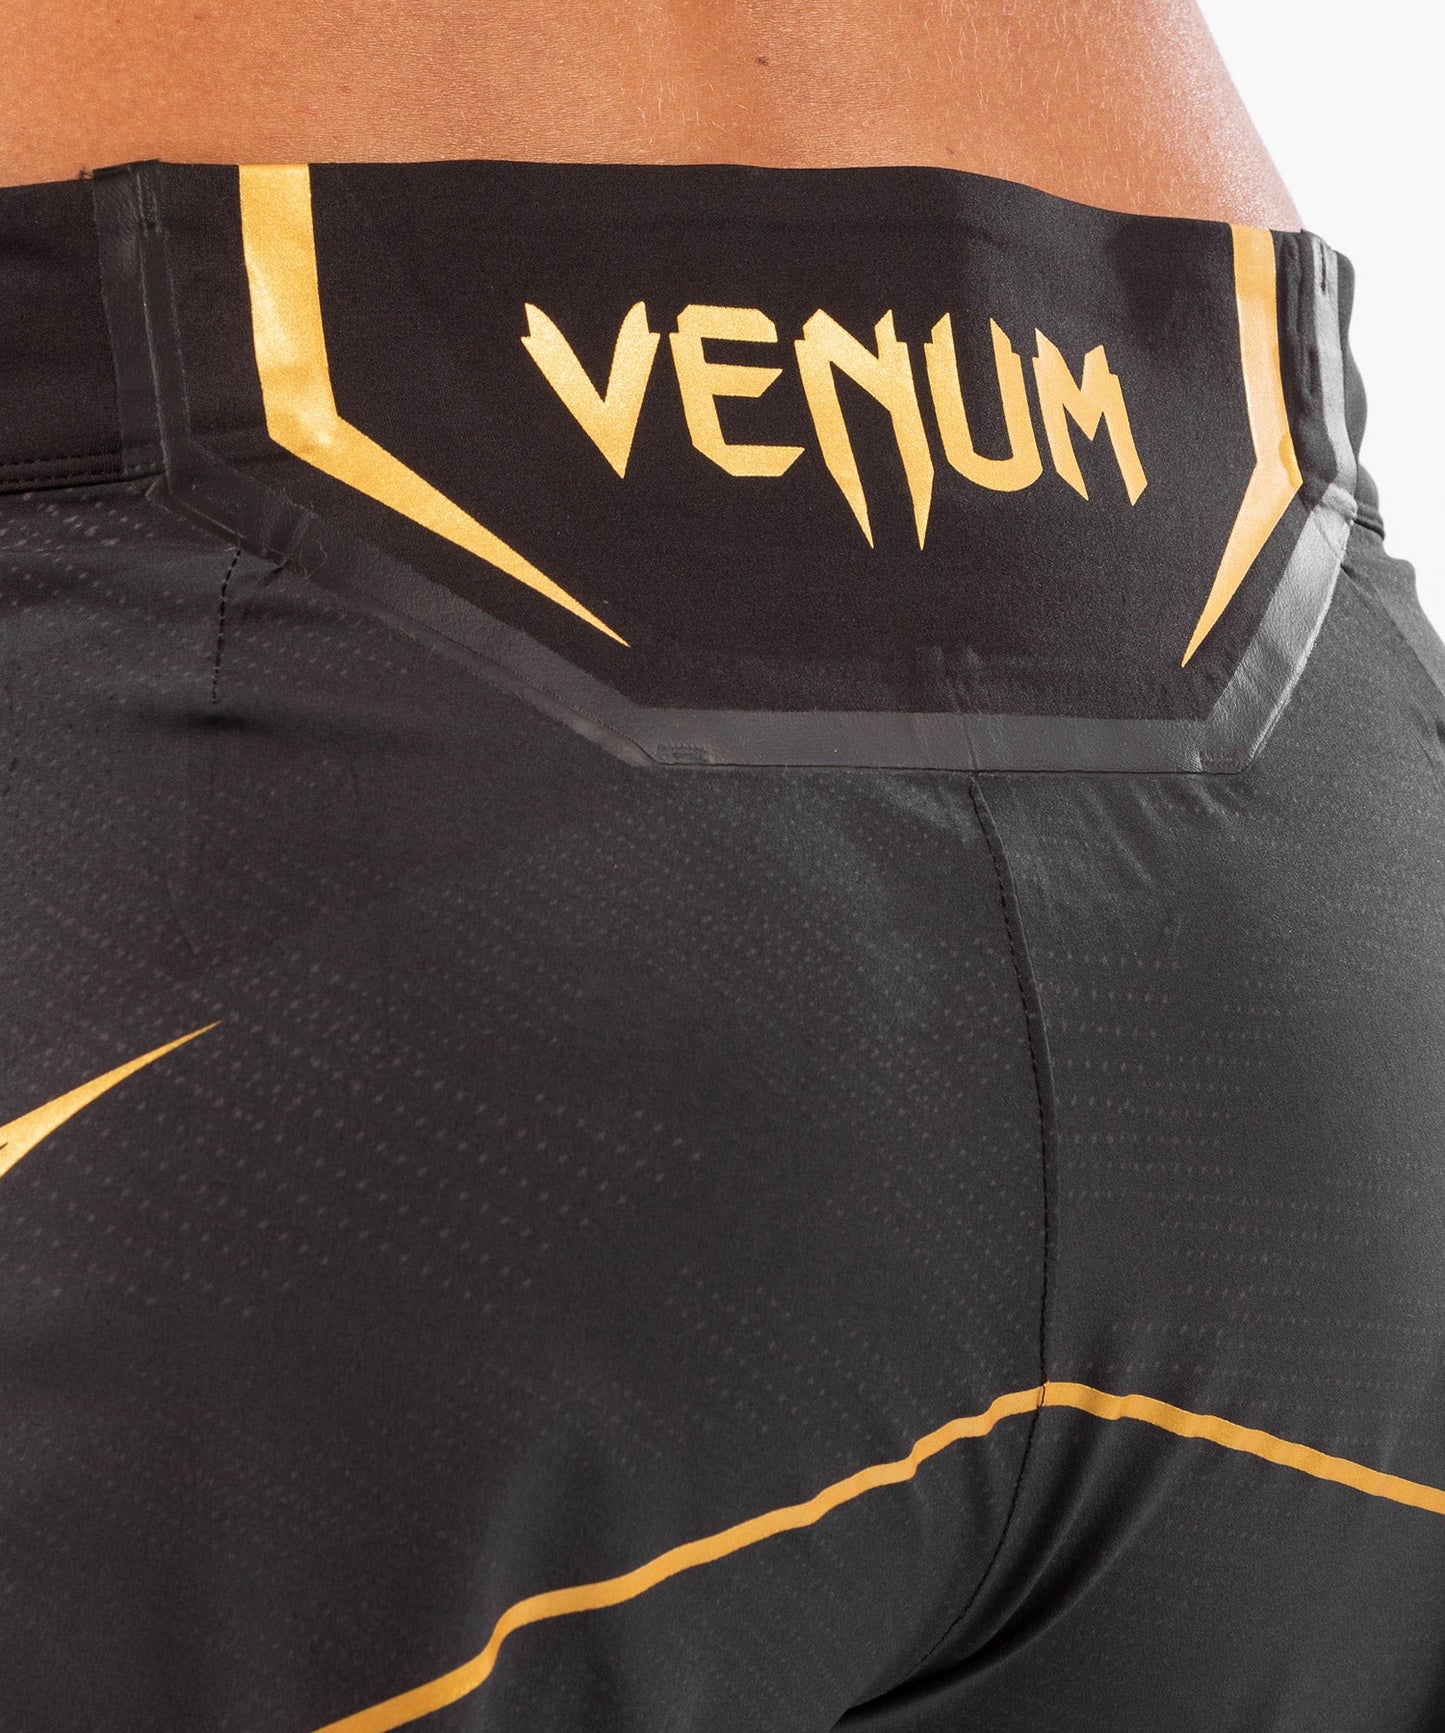 UFC Venum Authentic Fight Night Damen Shorts - Long Fit - Champion